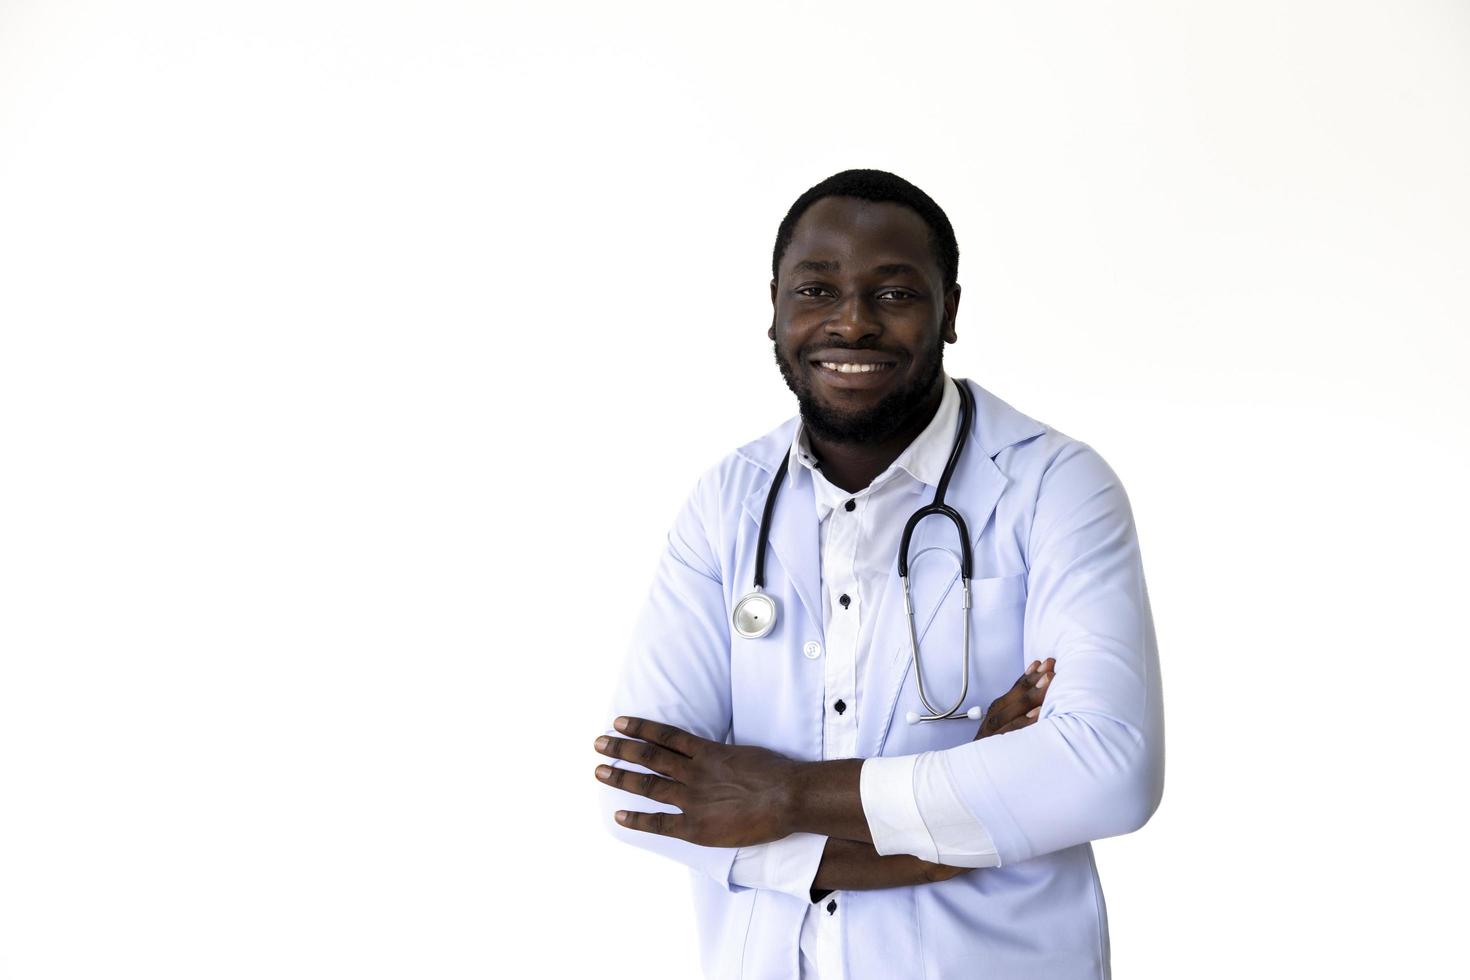 médecin afro-américain souriant avec un uniforme complet et un stéthoscope sur fond blanc à des fins médicales et de soins de santé photo